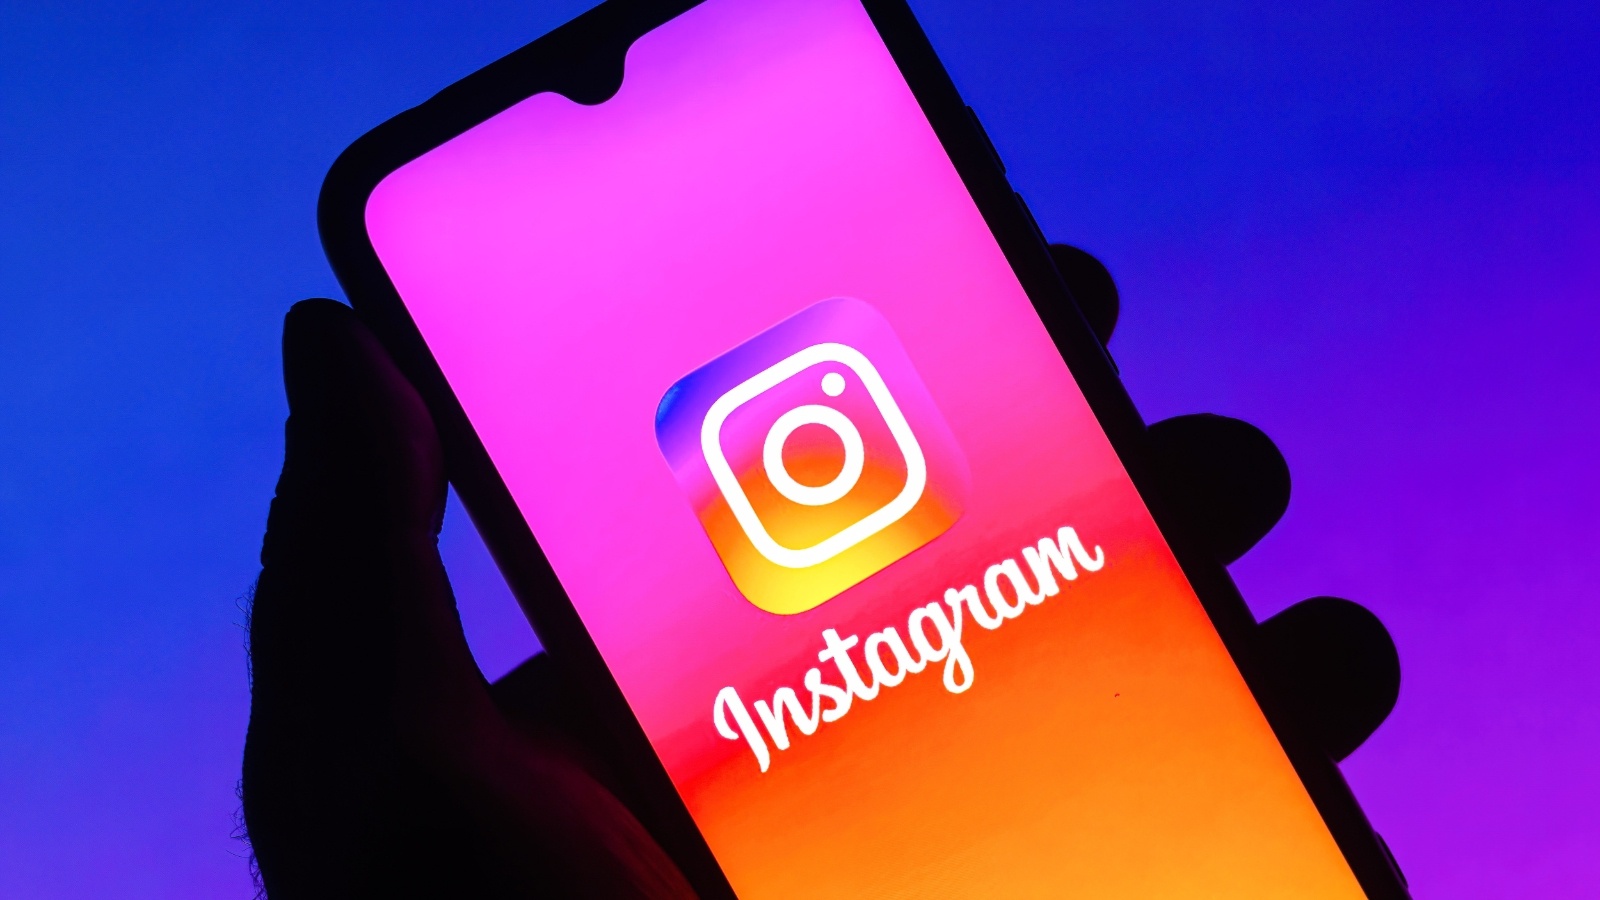 Instagram: Nέα ρύθμιση – Τι εμφανίζεται και εξαφανίζεται μετά από 24 ώρες